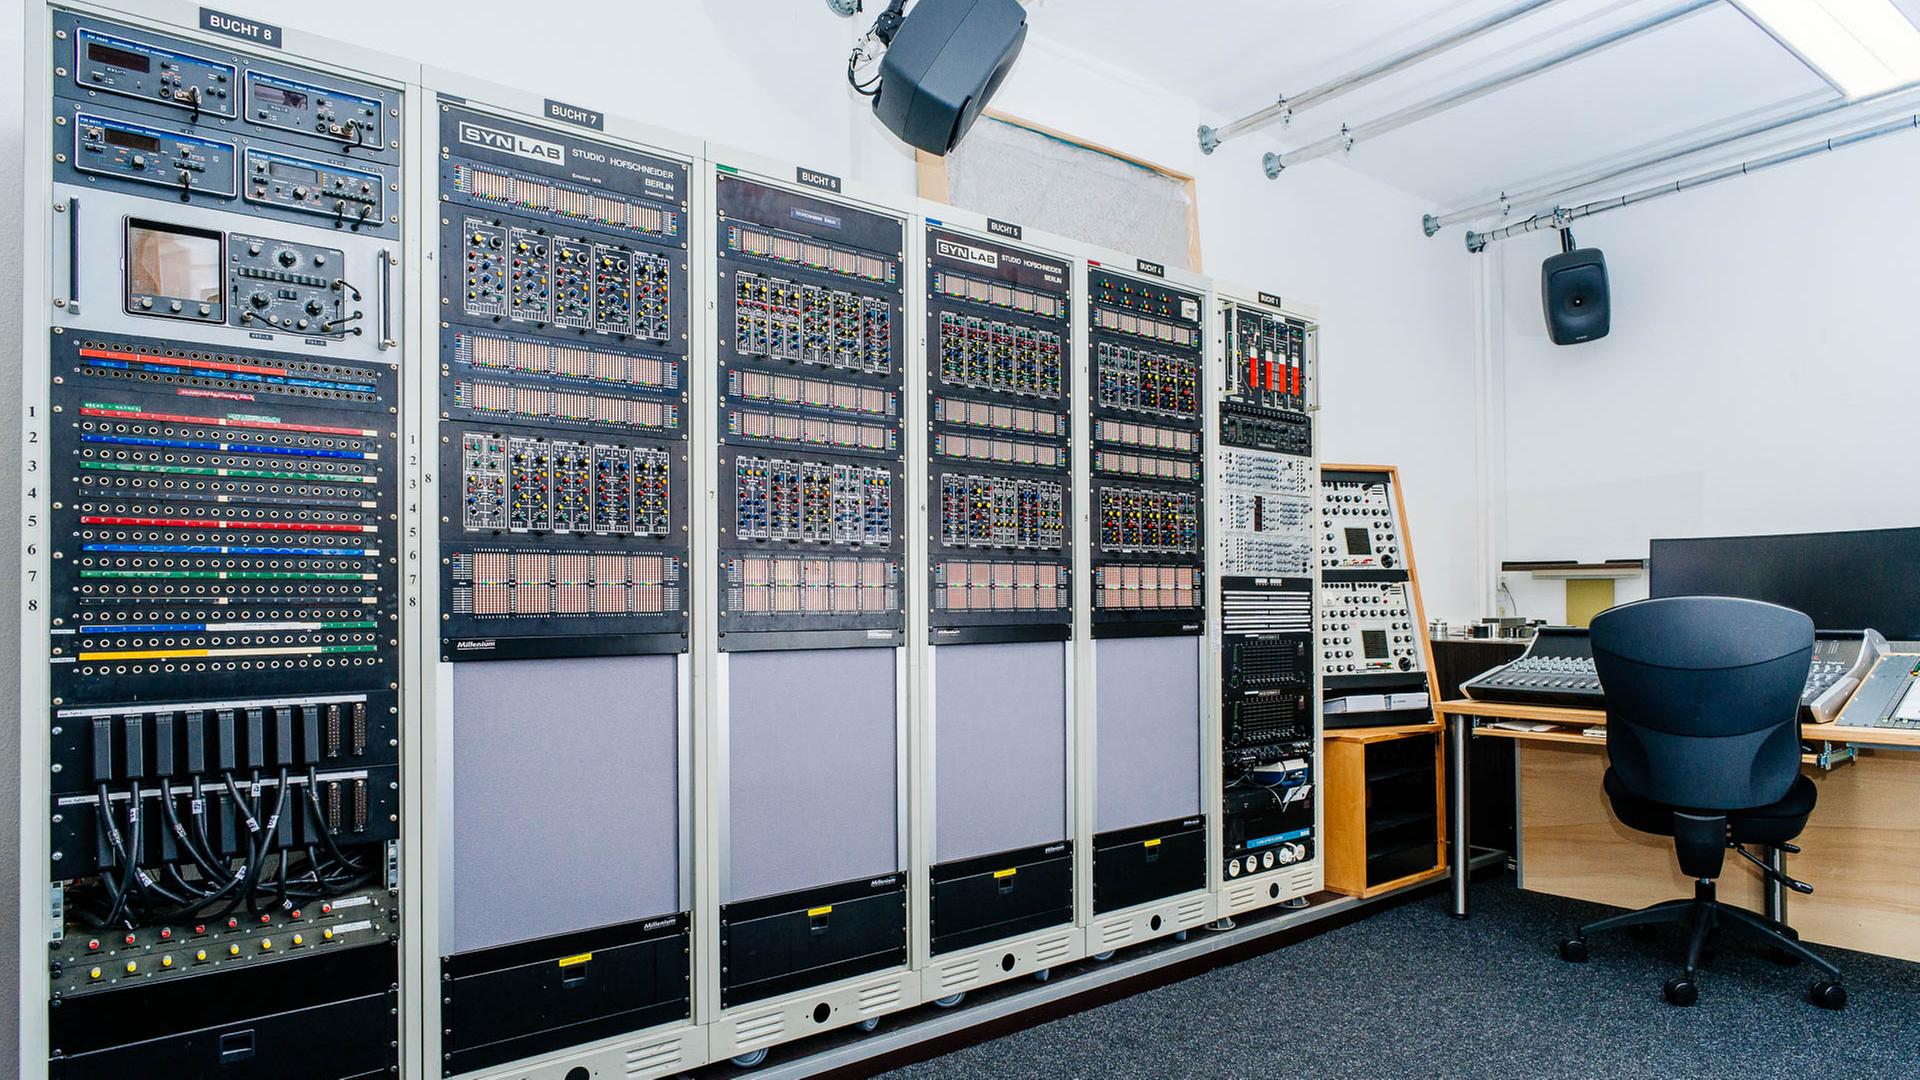 Die elektronischen Module des Synlab mit ihren Hunderten von Knöpfen decken eine ganze Wand ab.